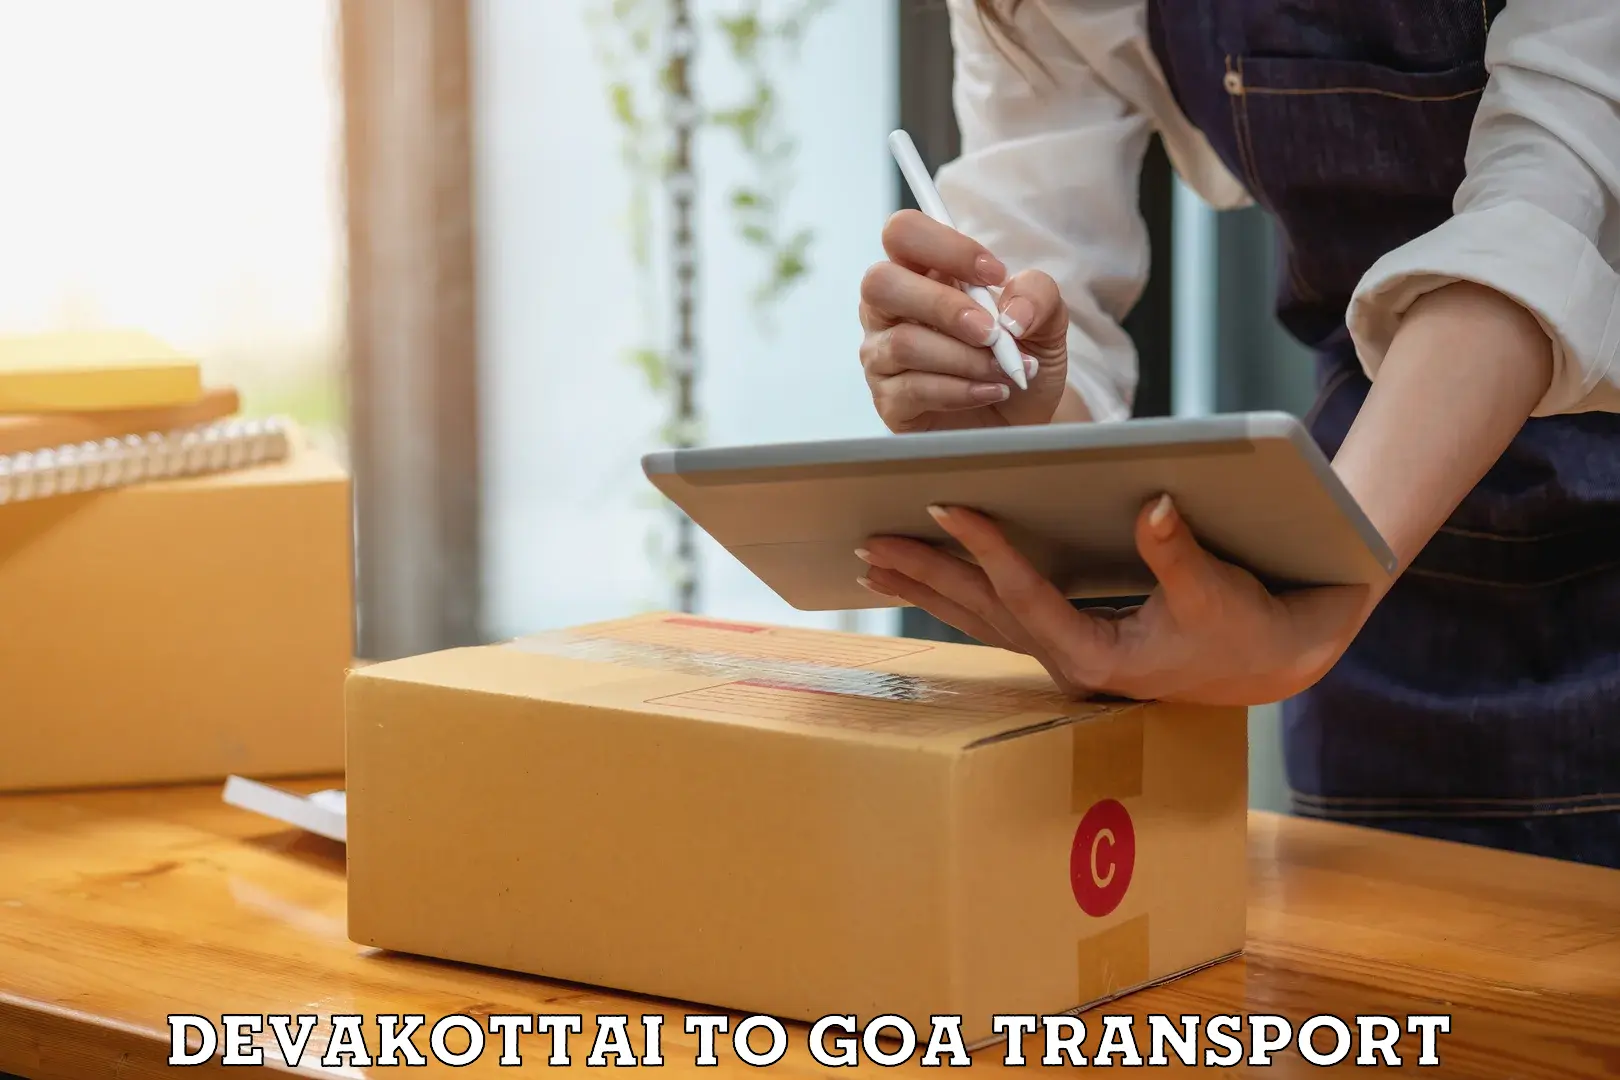 Vehicle parcel service Devakottai to IIT Goa